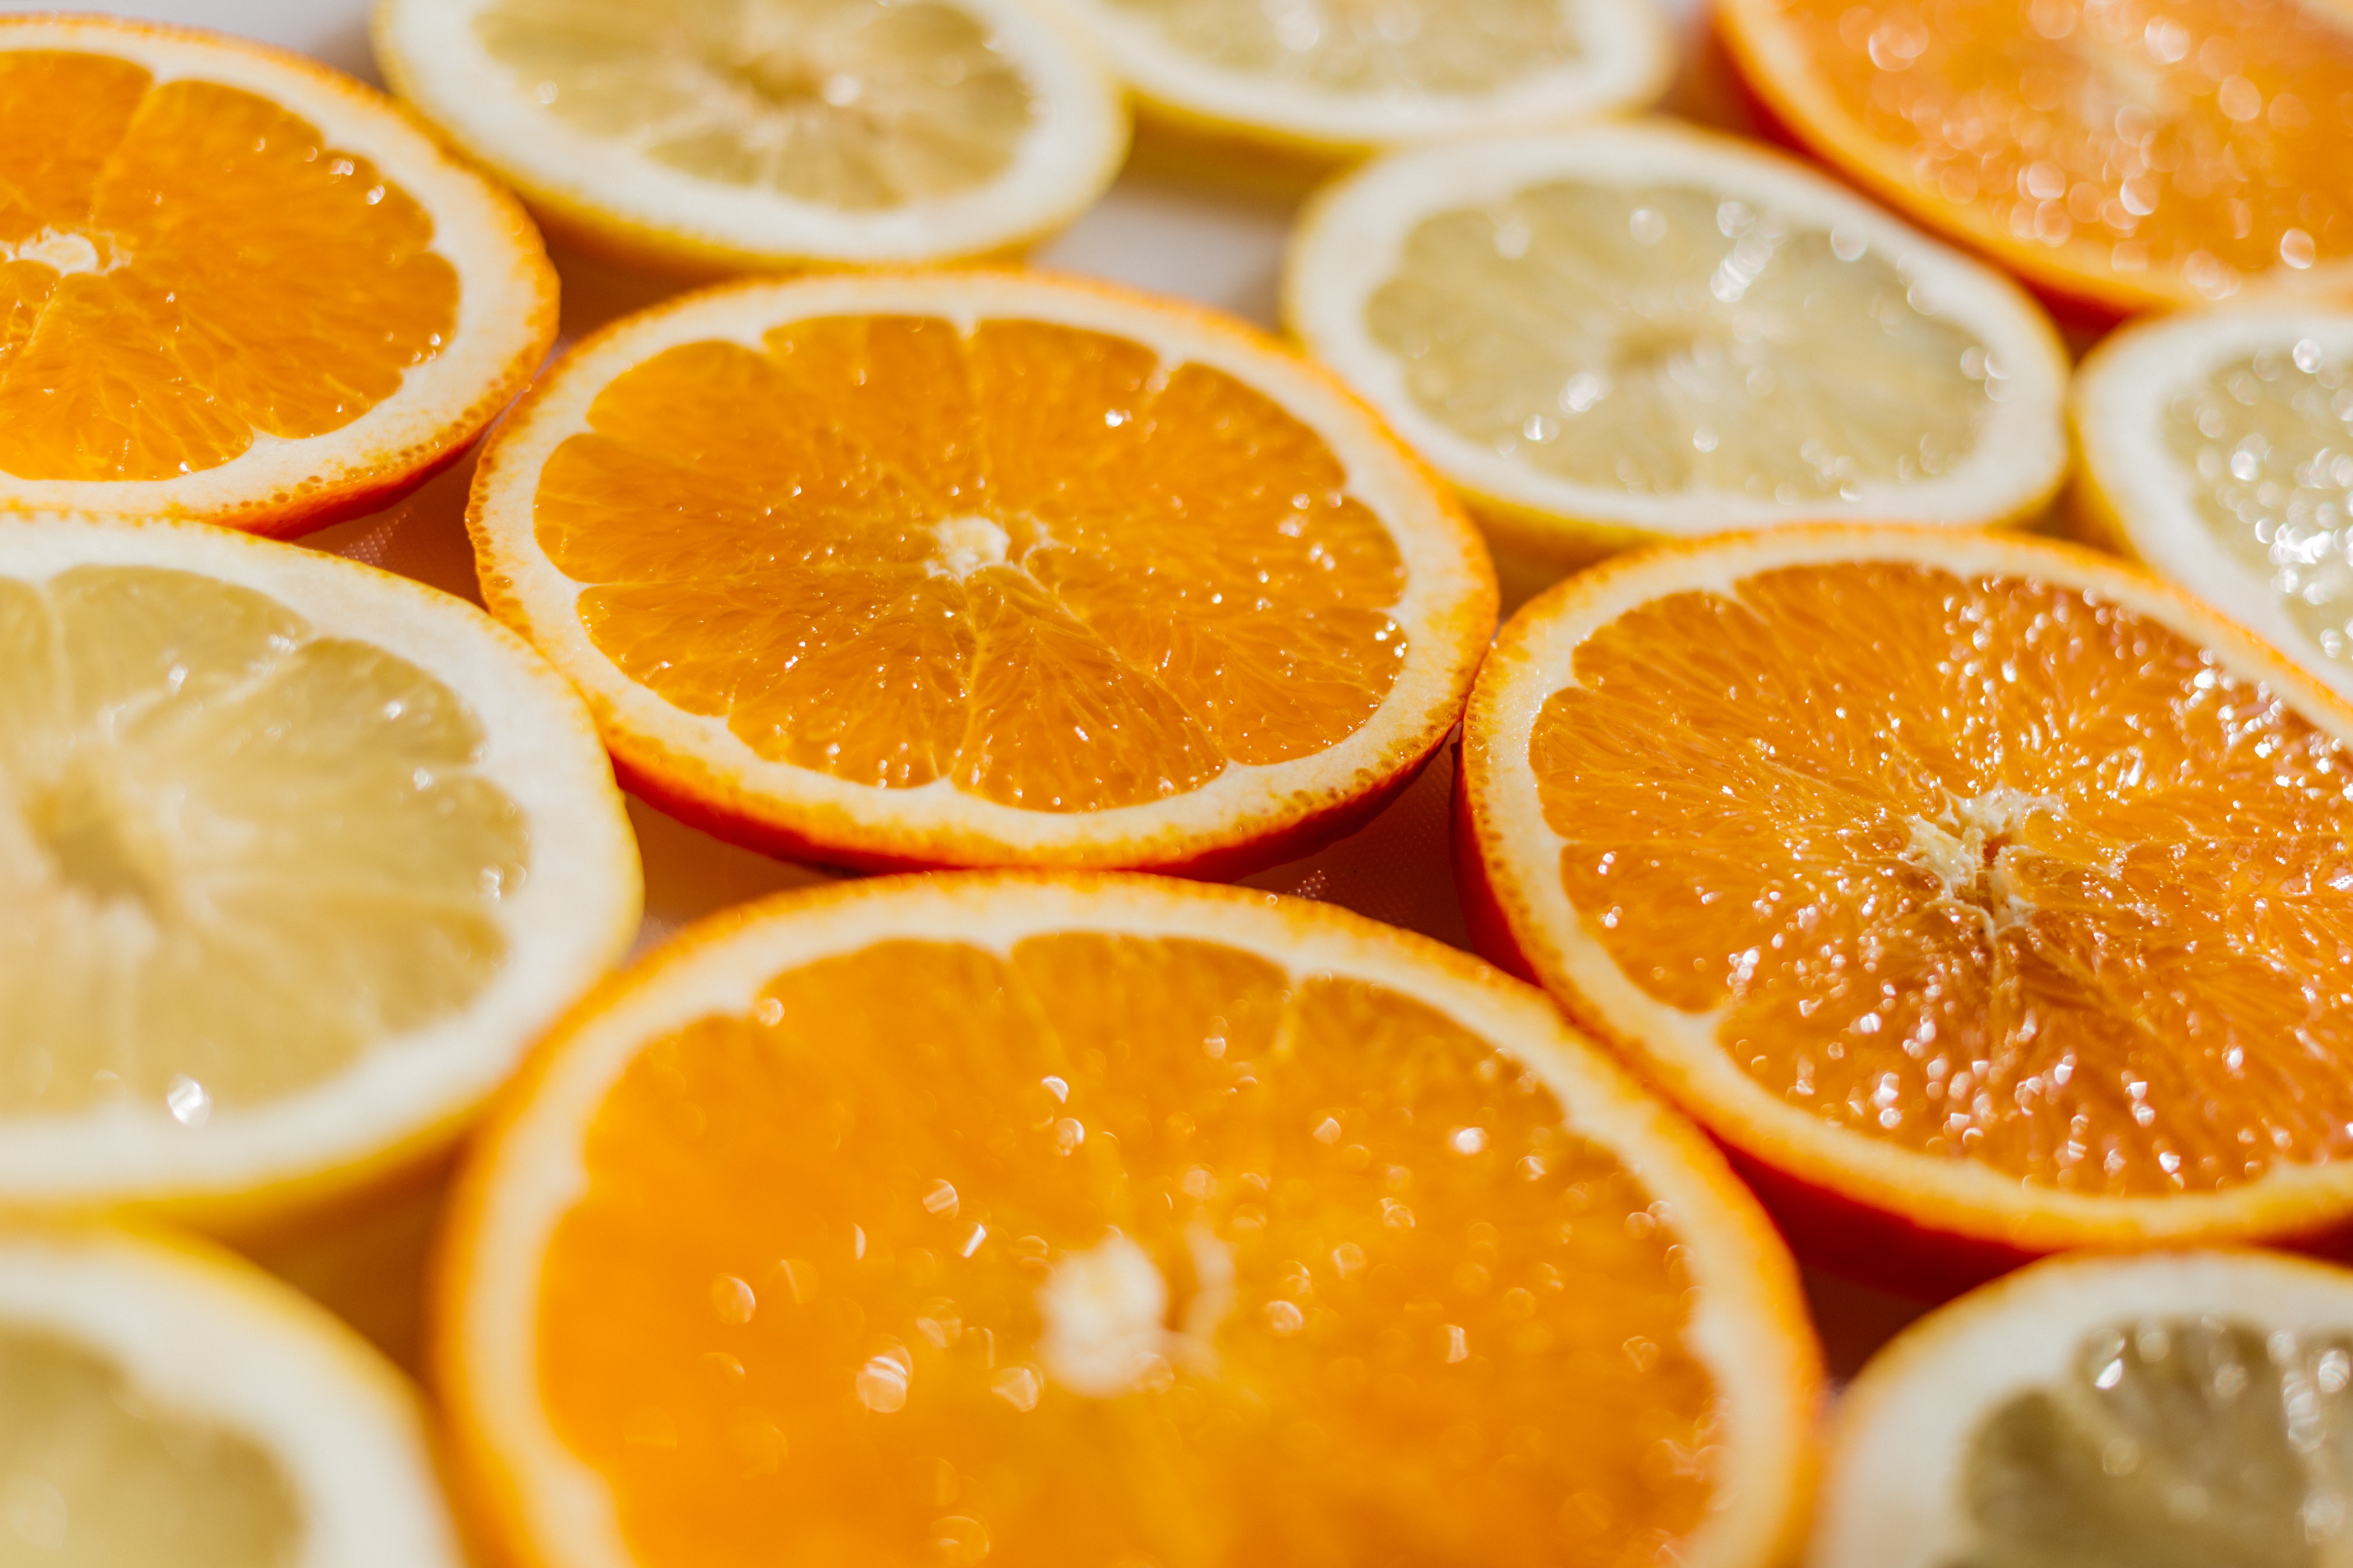 Free stock photos of orange slice · Pexels